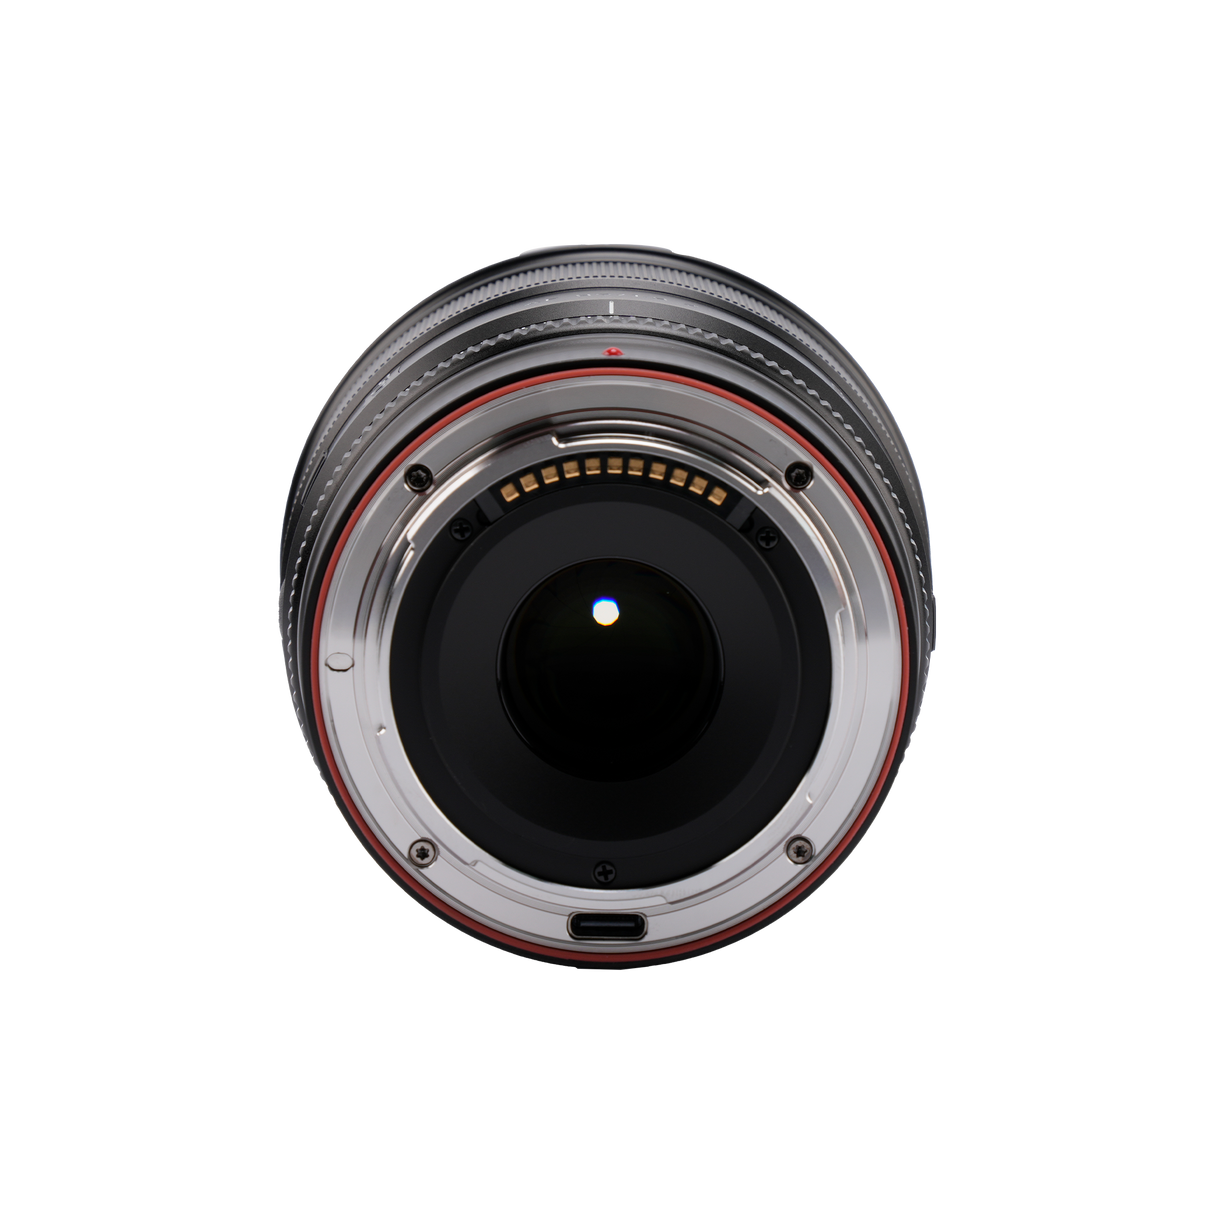 Lens af 27mm f/1.2 pro z for nikon